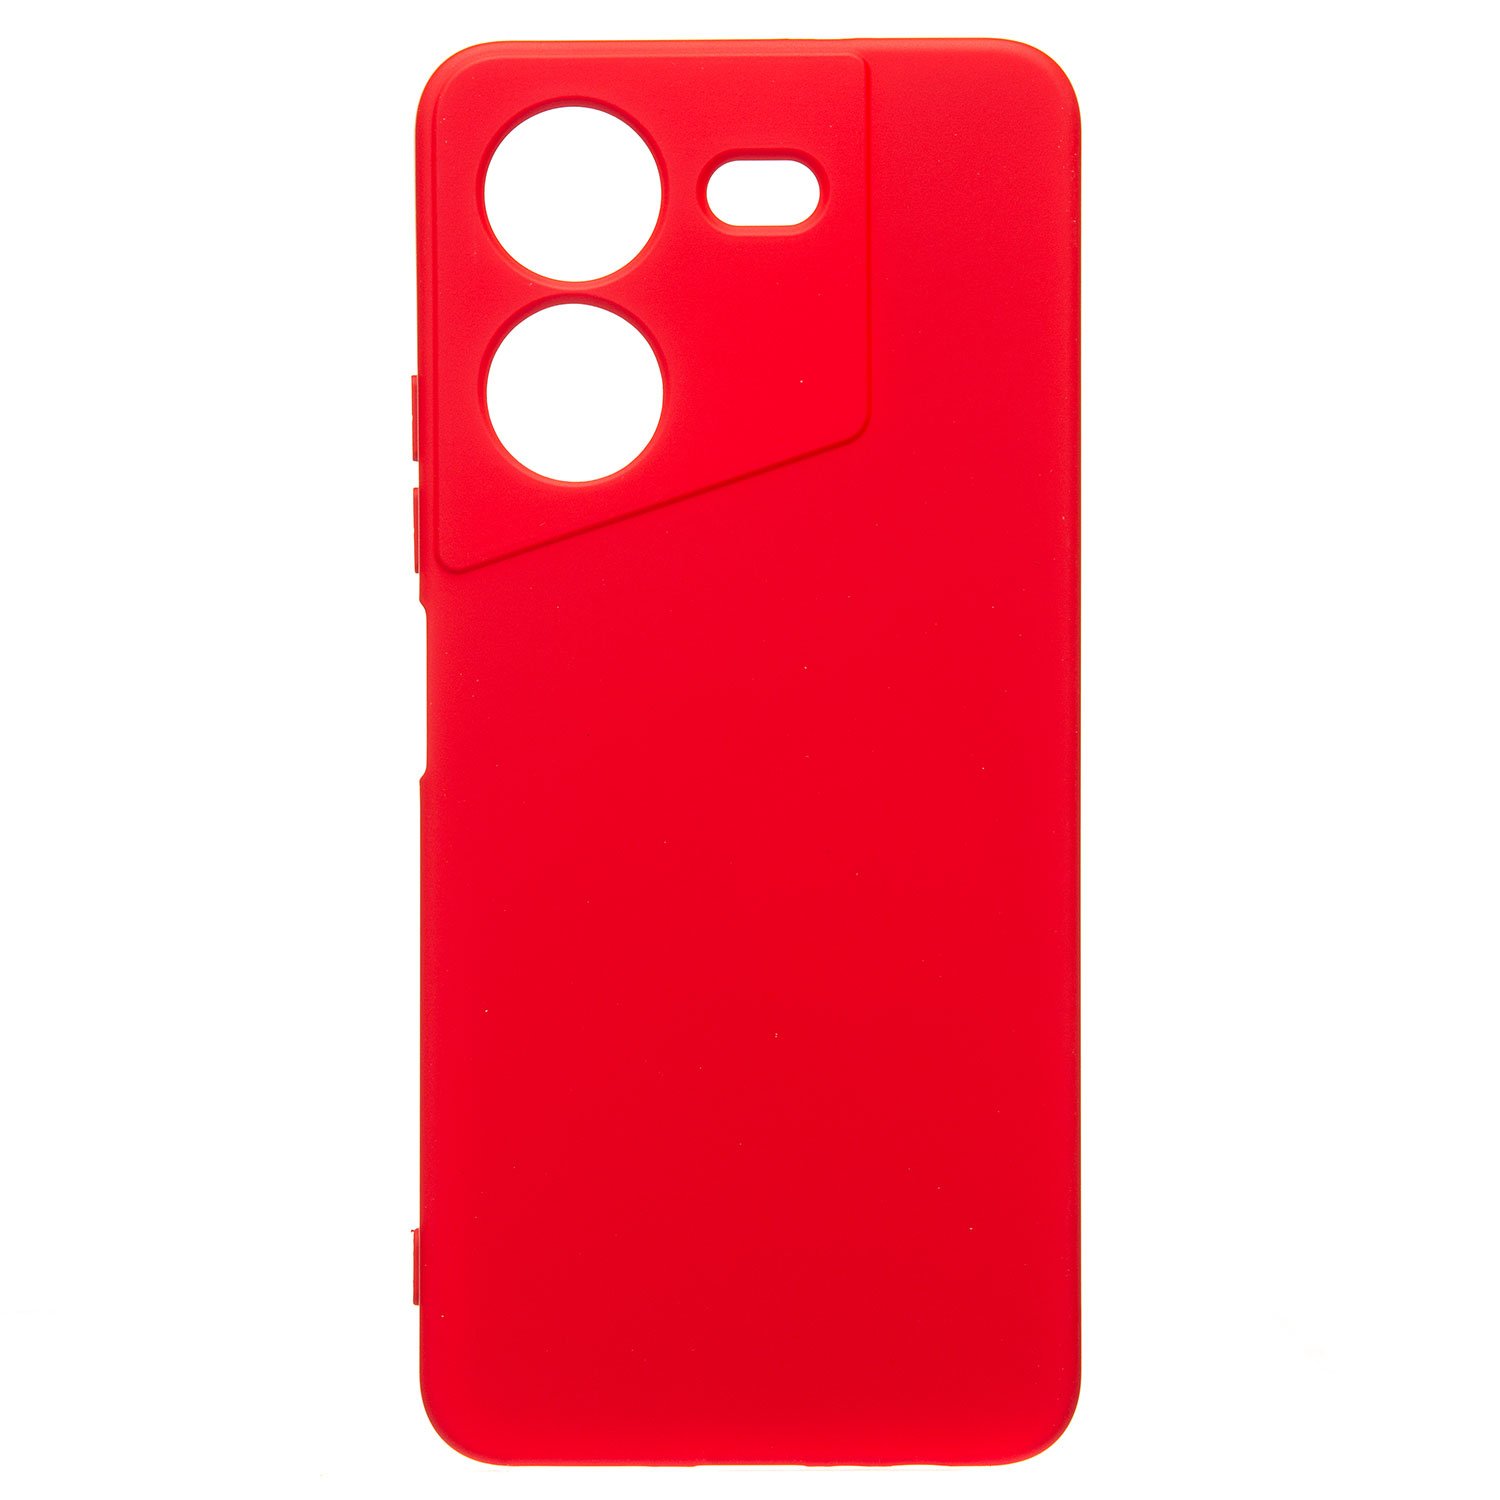 Чехол-накладка Activ Full Original Design для смартфона TECNO Pova 5, силикон, красный (225170)